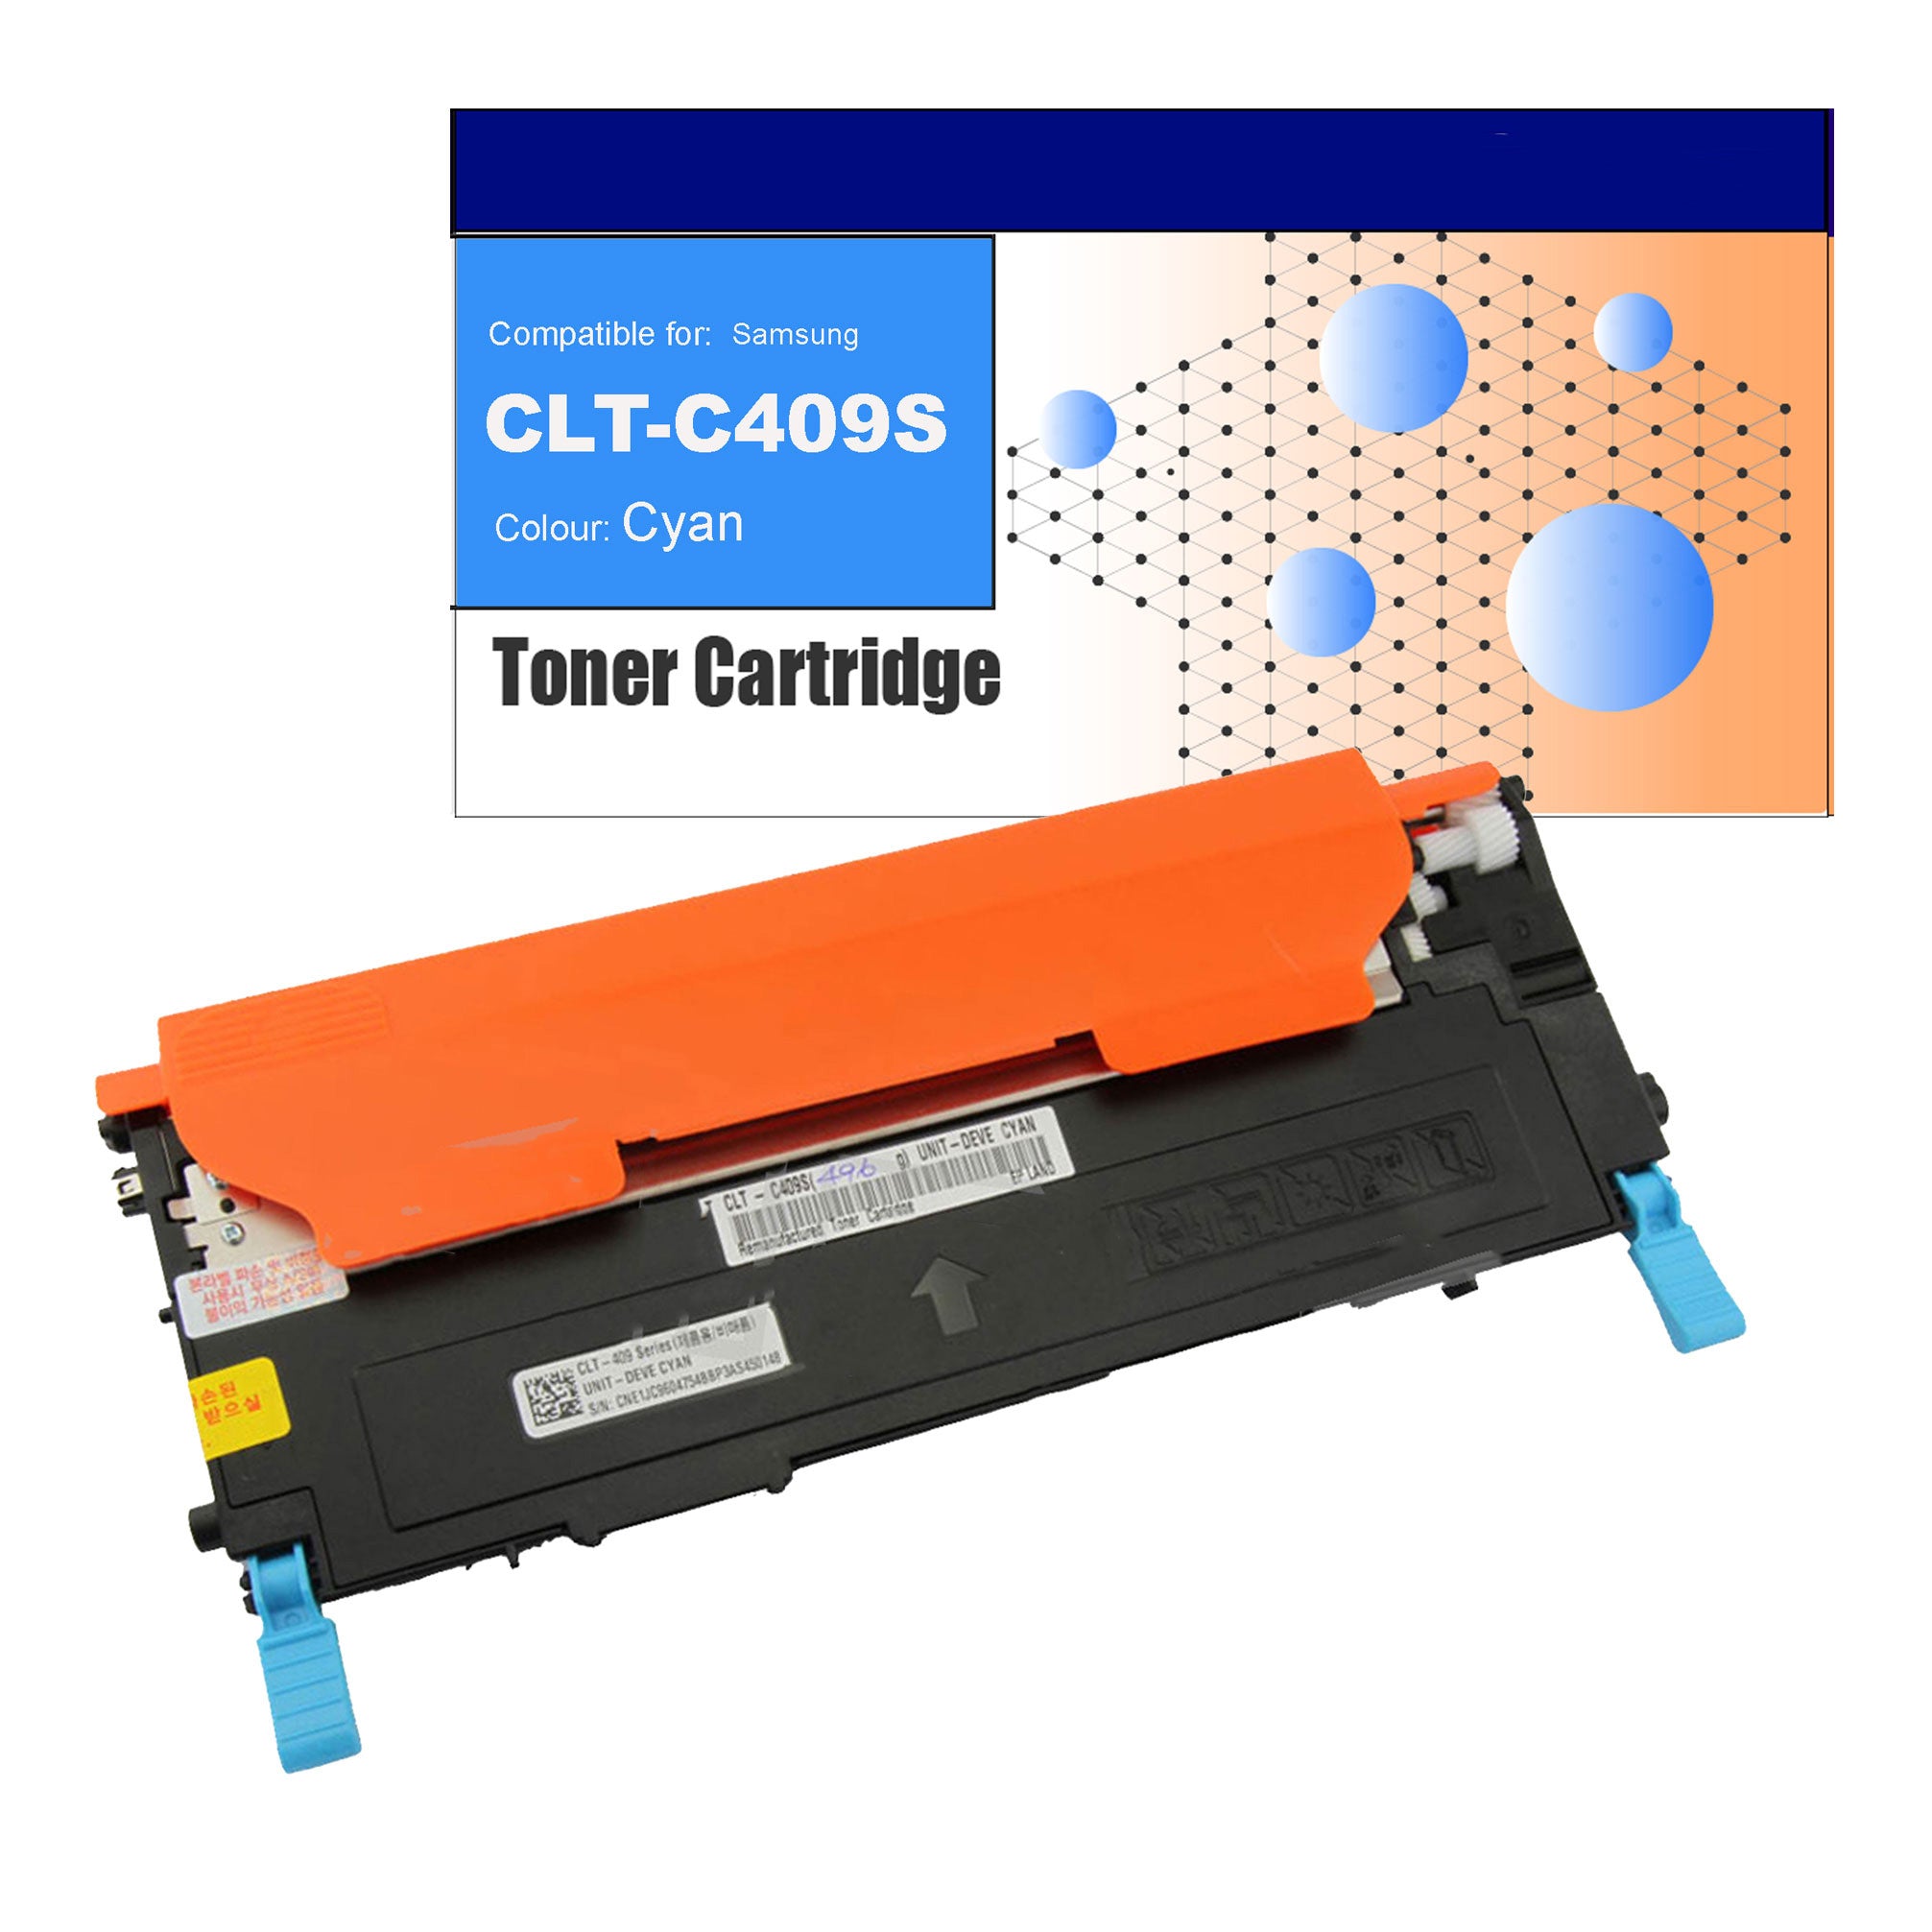 Compatible Toner for Samsung CLT-C409S (SU007A) Cyan Toner Cartridges